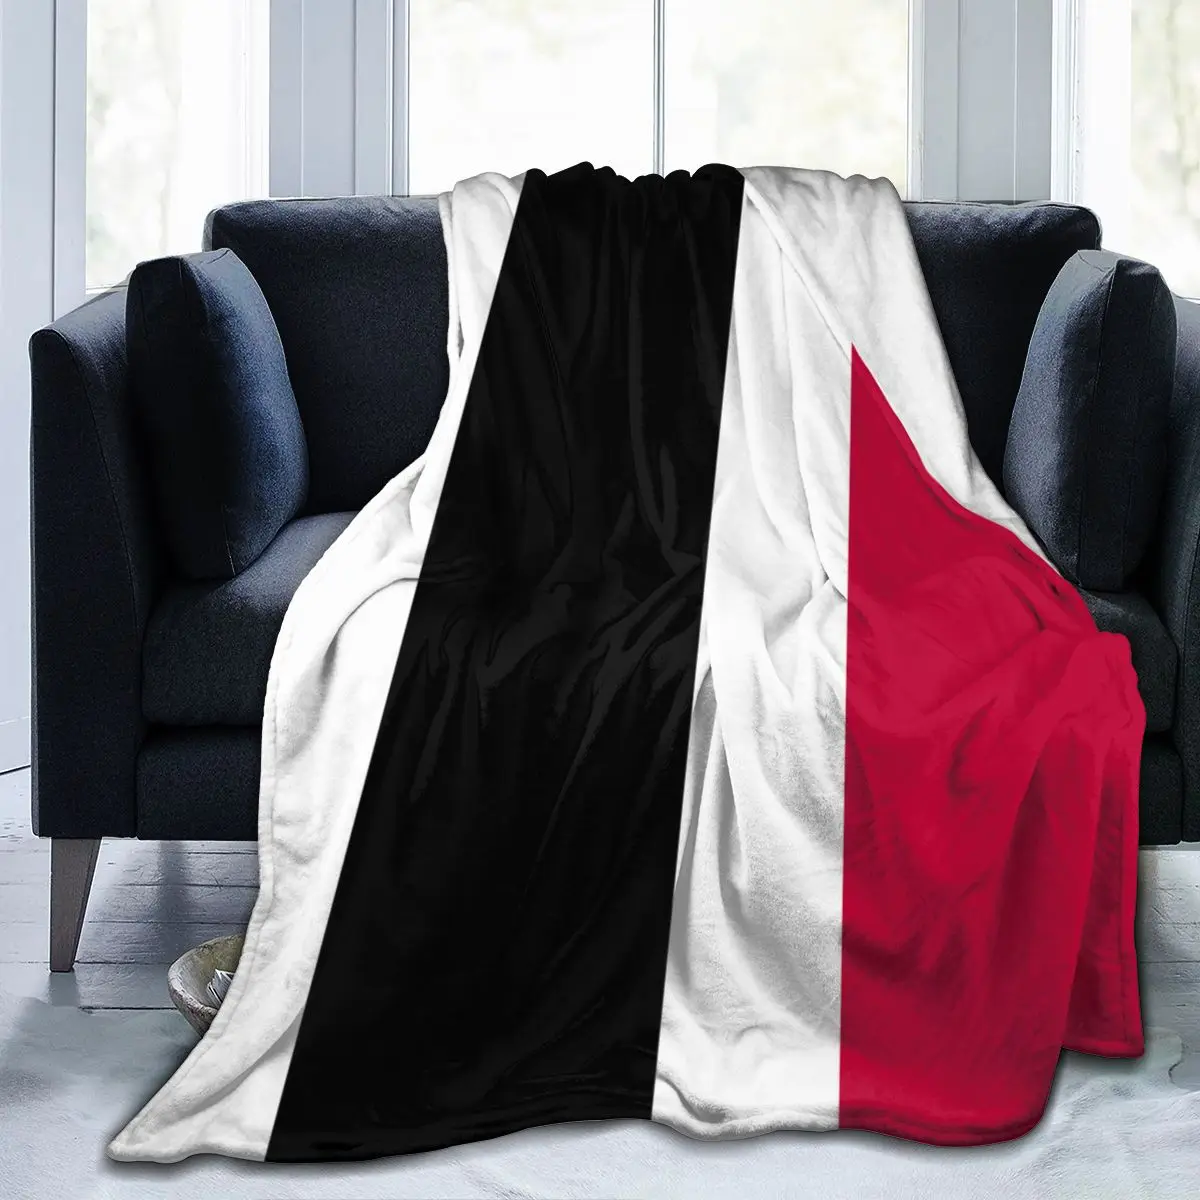 

Фланелевое Одеяло с йеменским флагом, легкий тонкий теплый мягкий плед, механическая стирка, лоскутное шитье, для путешествий, дивана, крова...